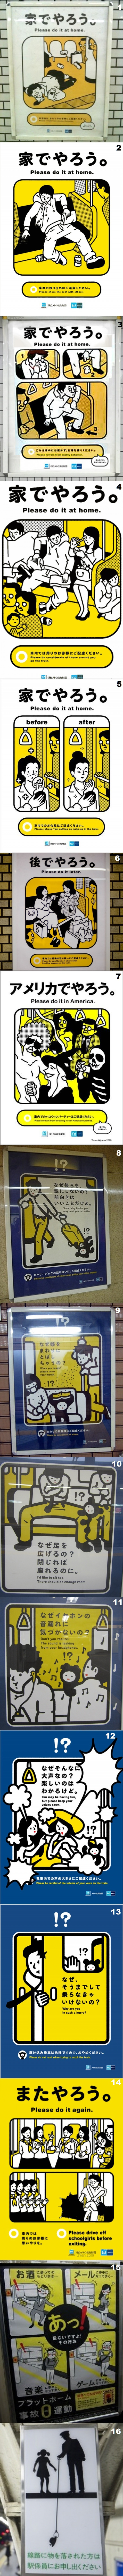 N-metro-japanese-warnings